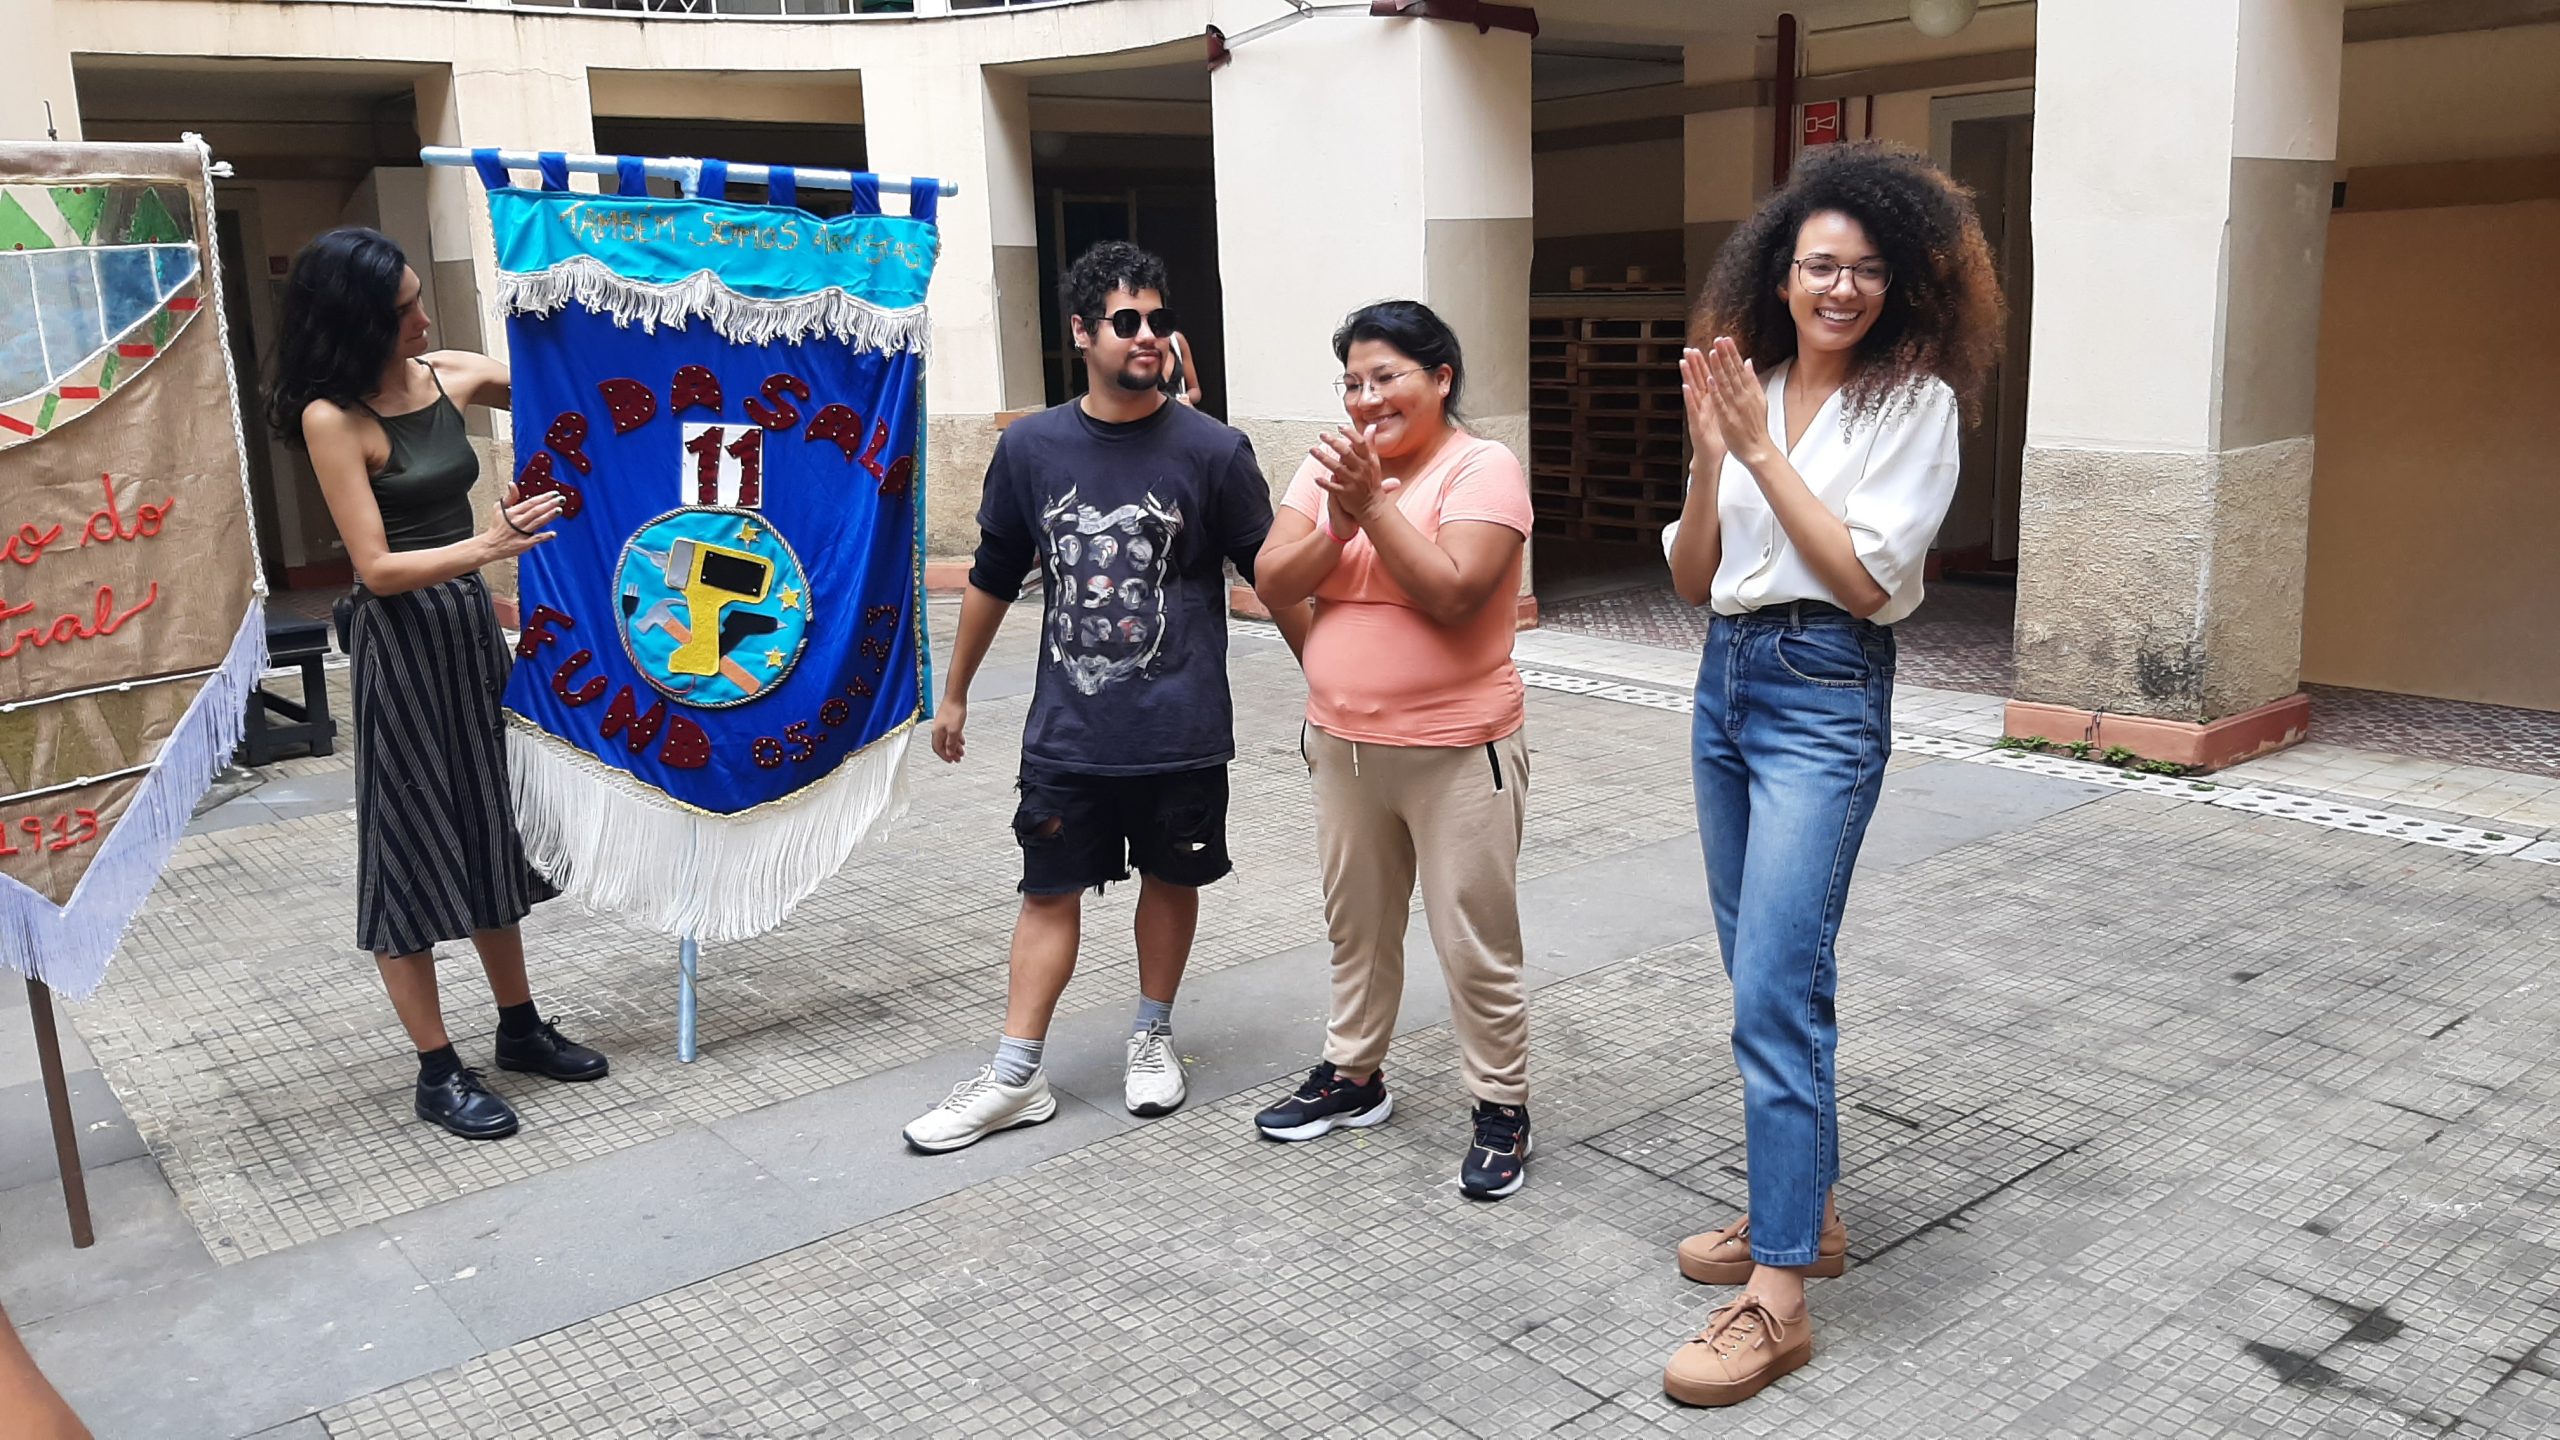 Foto colorida mostrando Marina Lima e três estudantes do curso de Técnicas de Palco. No lado esquerdo da foto uma das estudantes segura um estandarte na cor azul com o escrito "TP DA SALA 11. FUND 05.04.2023"